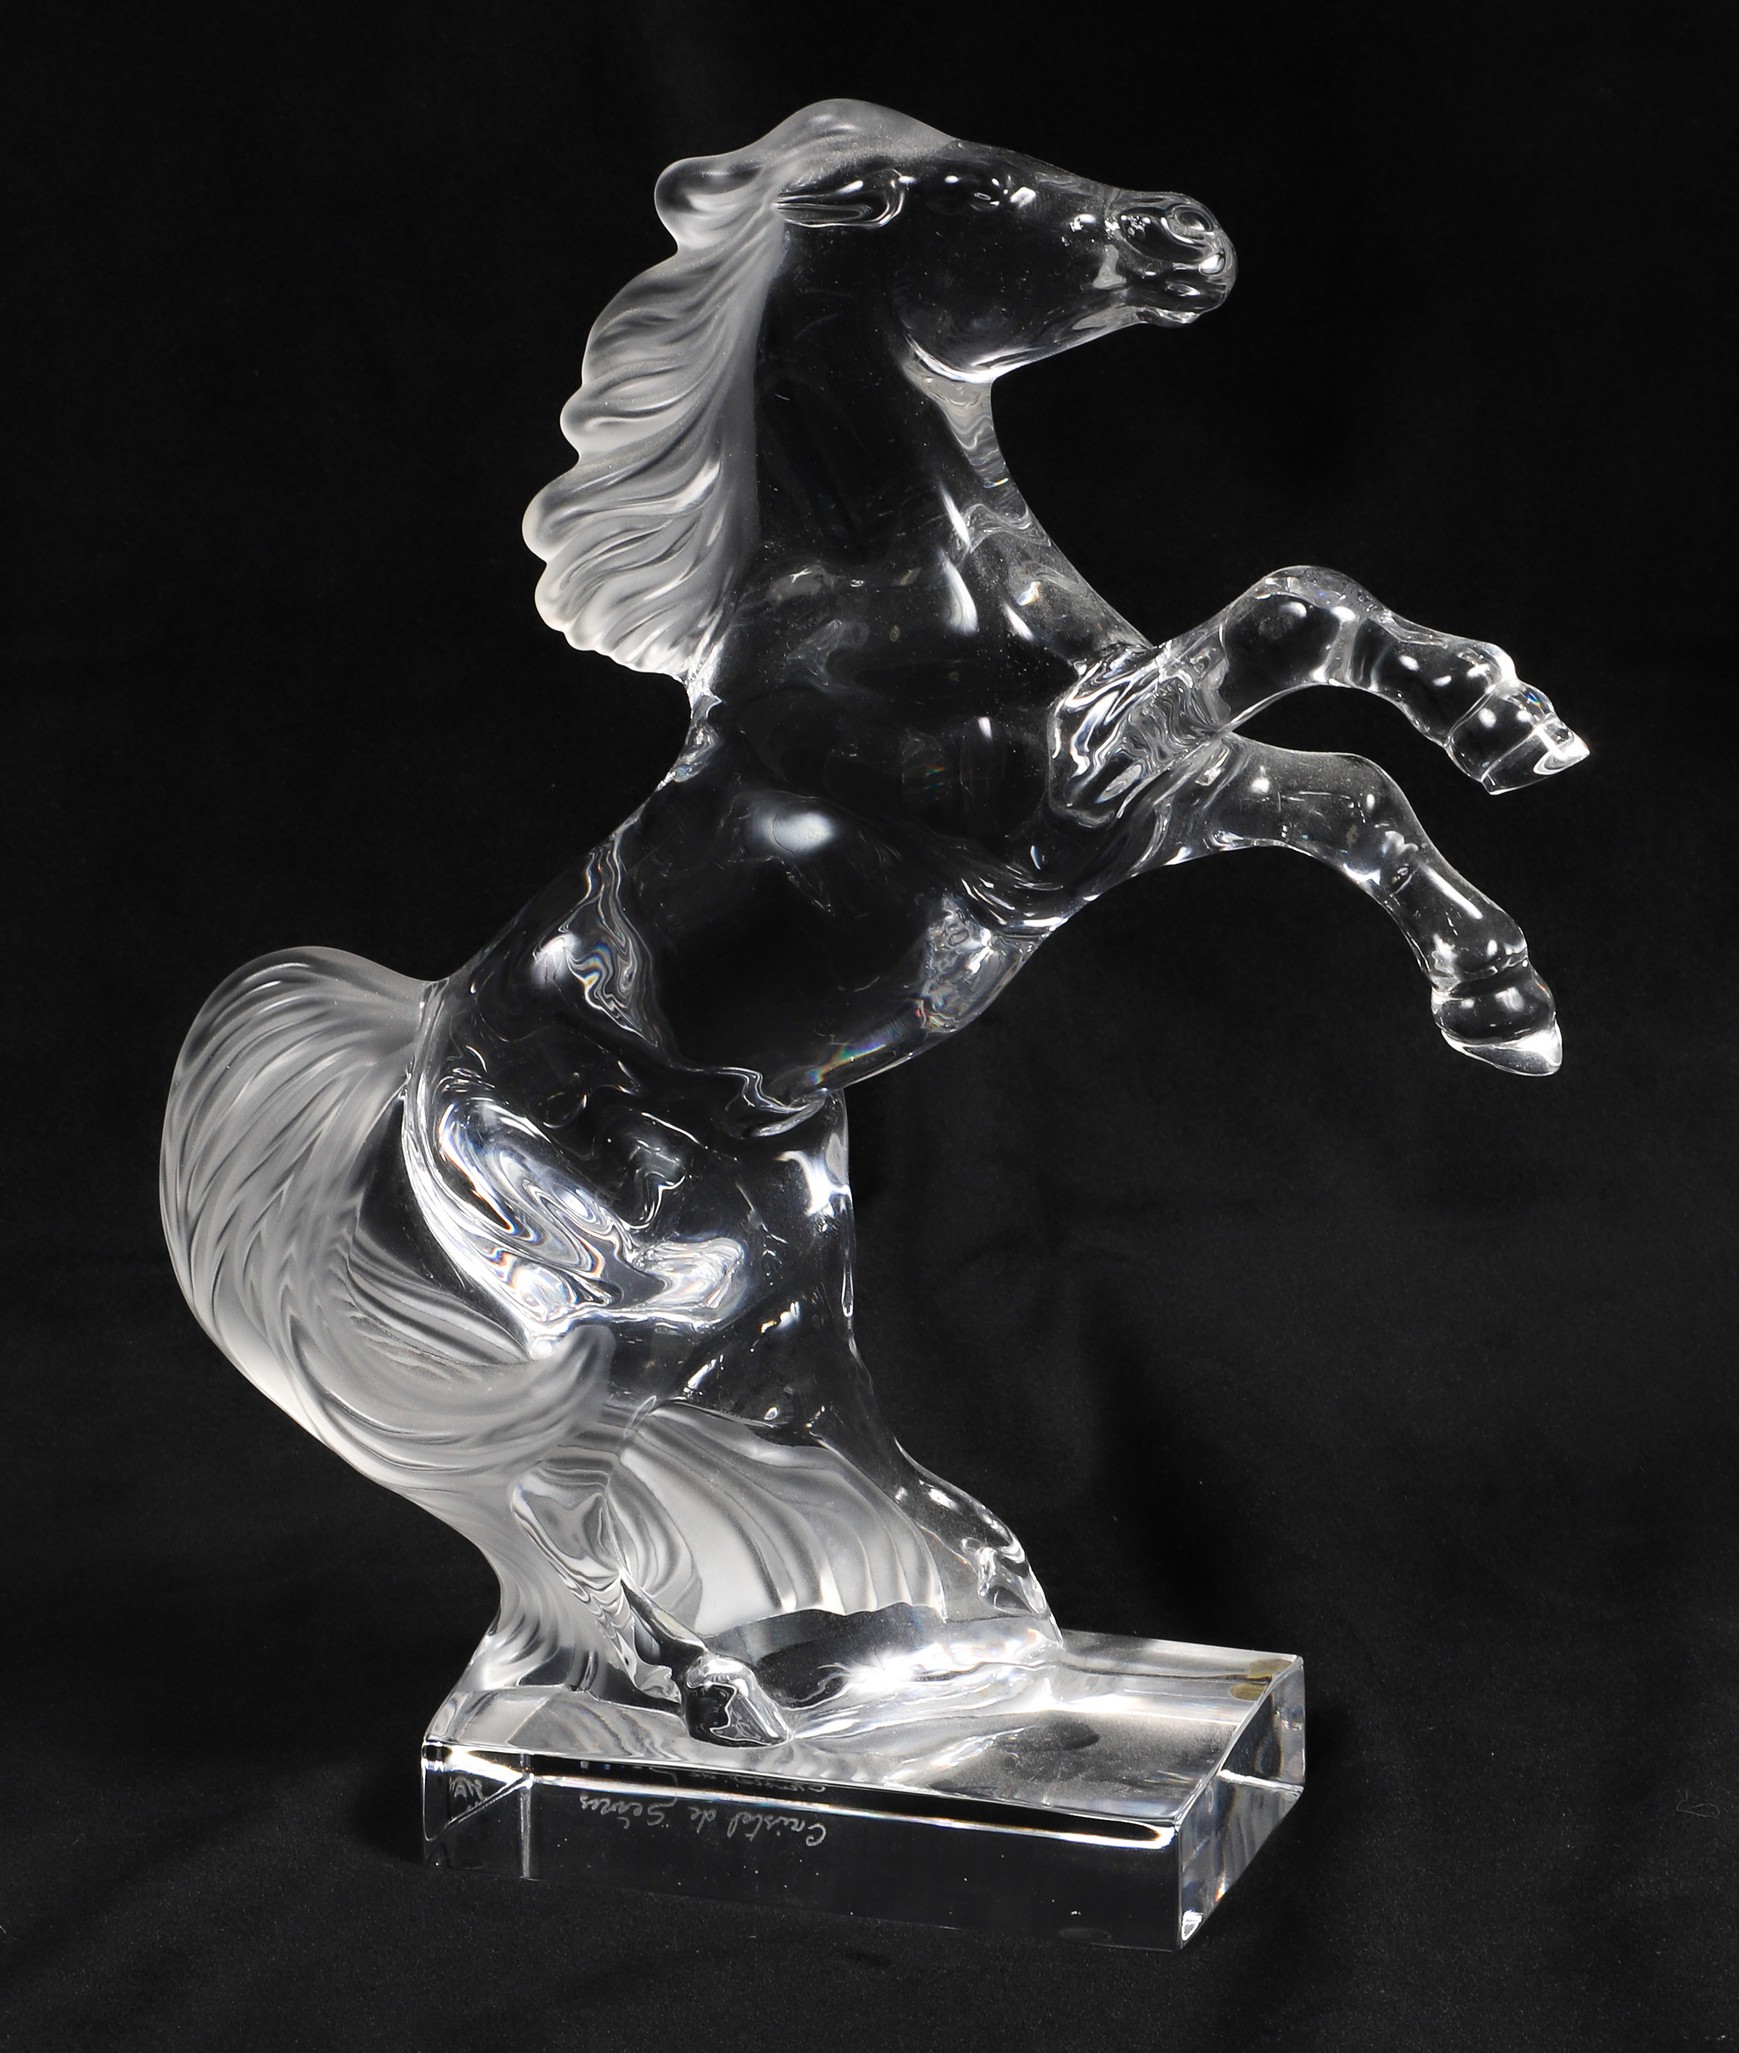 Cristal de Sevres crystal horse 2e05d9